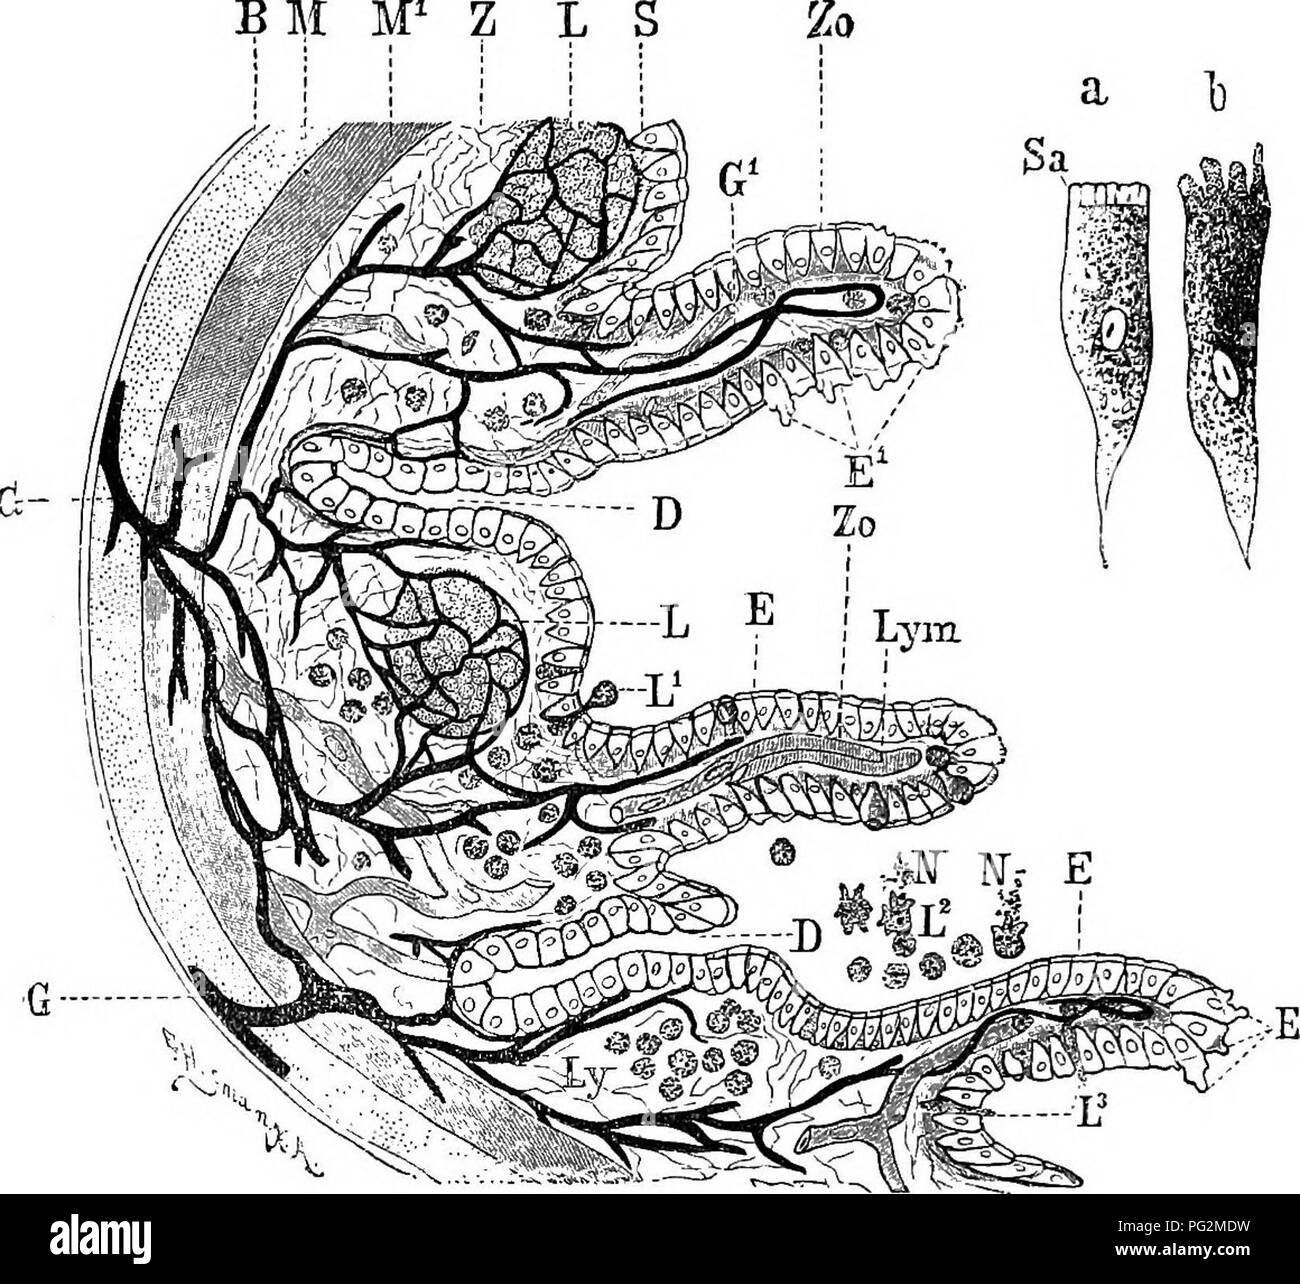 . Elementi di anatomia comparata dei vertebrati. Anatomia di confronto. ;2G8 ANATOTSIY comparativi strutture note come le cripte o ghiandole di Lieberhiihn, nonché a acinous ghiandole mucose. Il muco che secernono cellule caliciformi sono BM M^ Z L S. Vm. 214.âA, Semidiagkammatic Tbansvekse sezione di un Poktiou del WalIj dell'intestino. (Combinato dalla condizione visibile in entrambe inferiori e vertebrati superiori.) B, cellule epiteliali dell'intestino. /Â *, investimento peritoneale di tlie gut; M, longitudinale dello strato muscolare ; M^, circolare strato muscolare ; Z, tessuto connettivo strato ; S, della membrana mucosa Foto Stock